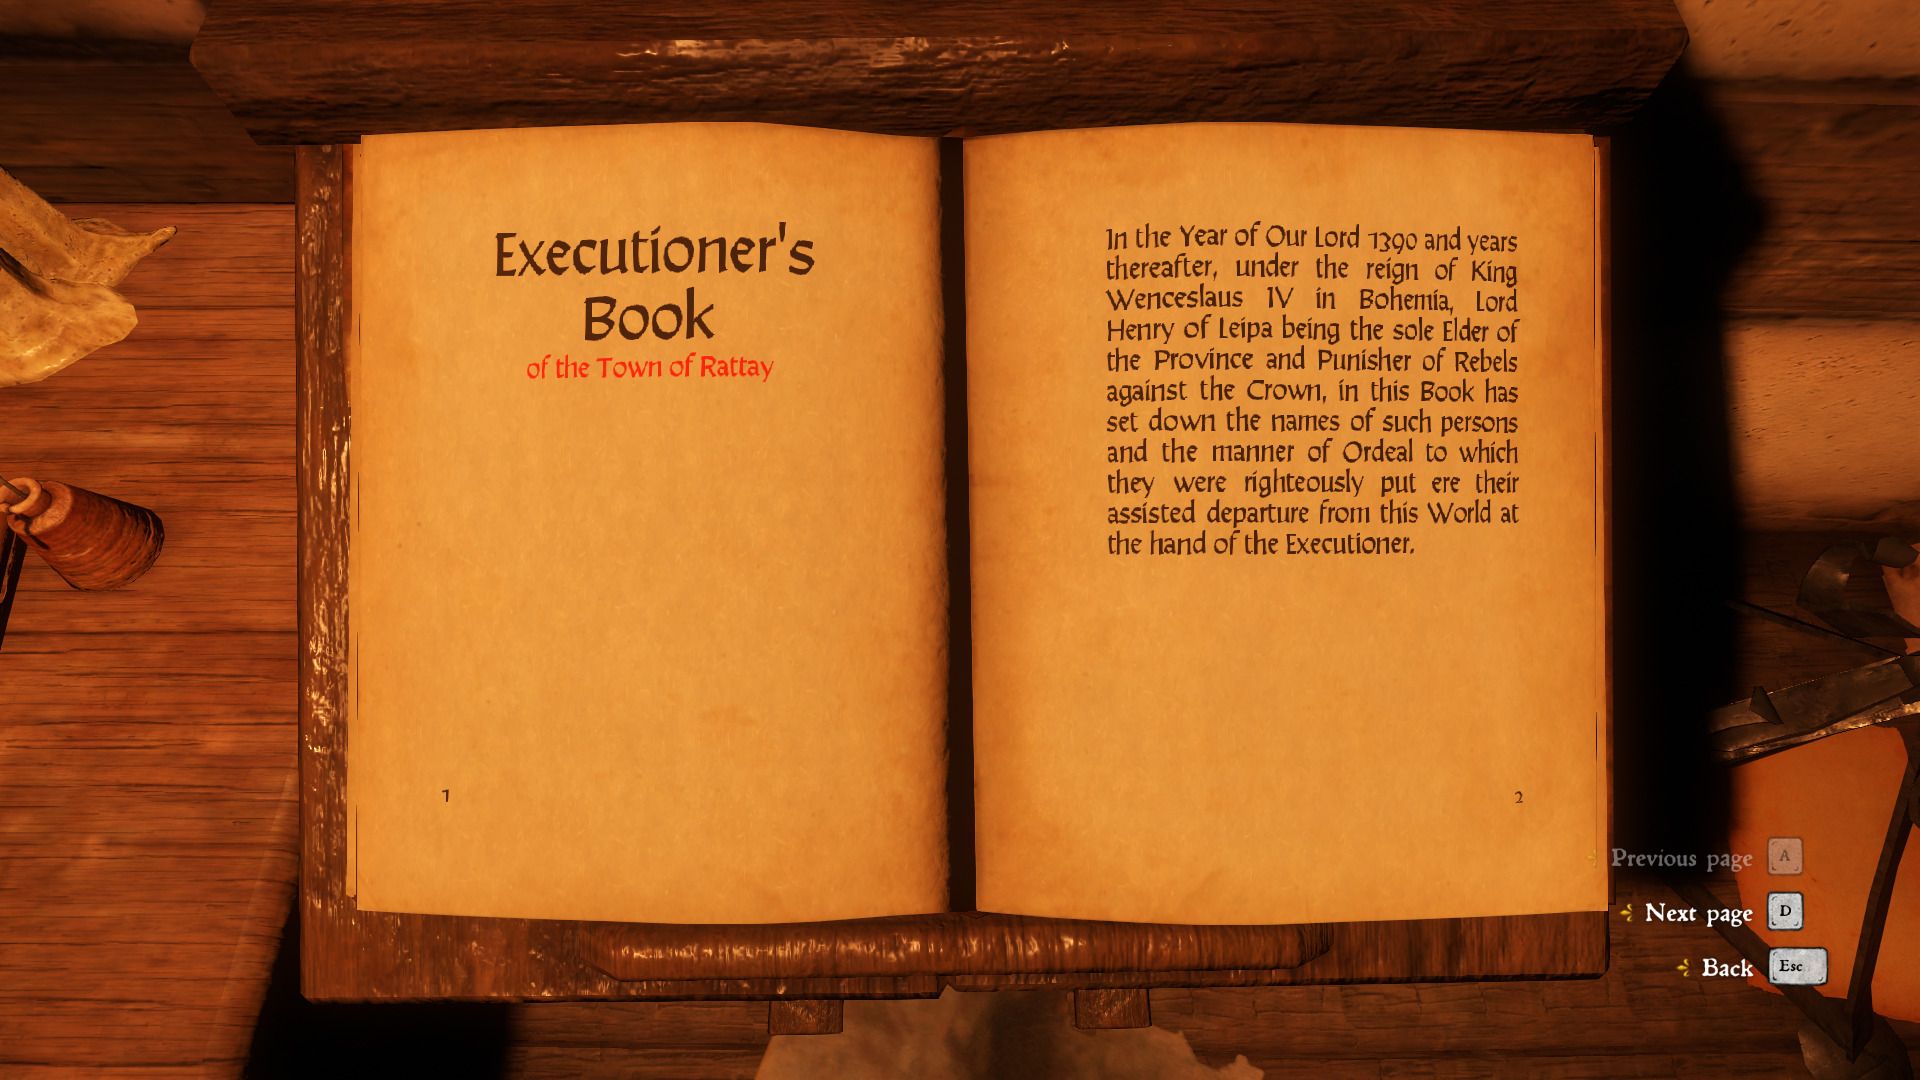 The Executioner's Book In Kingdom Come Deliverance